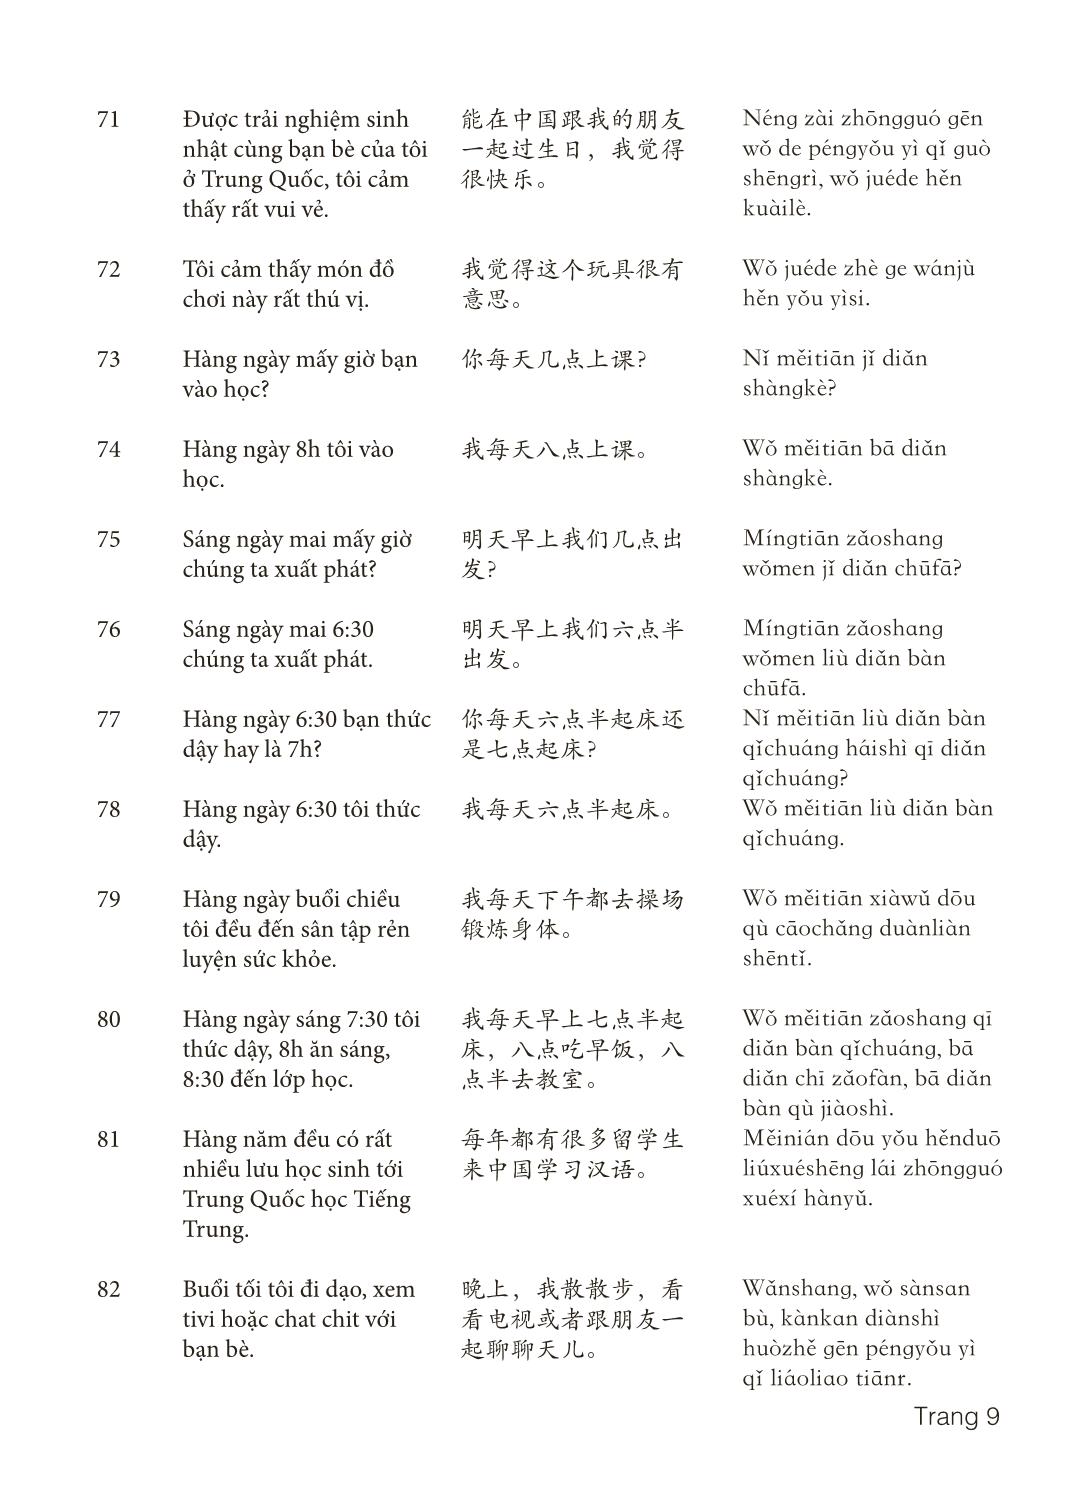 3000 Câu đàm thoại tiếng Hoa - Phần 5 trang 9